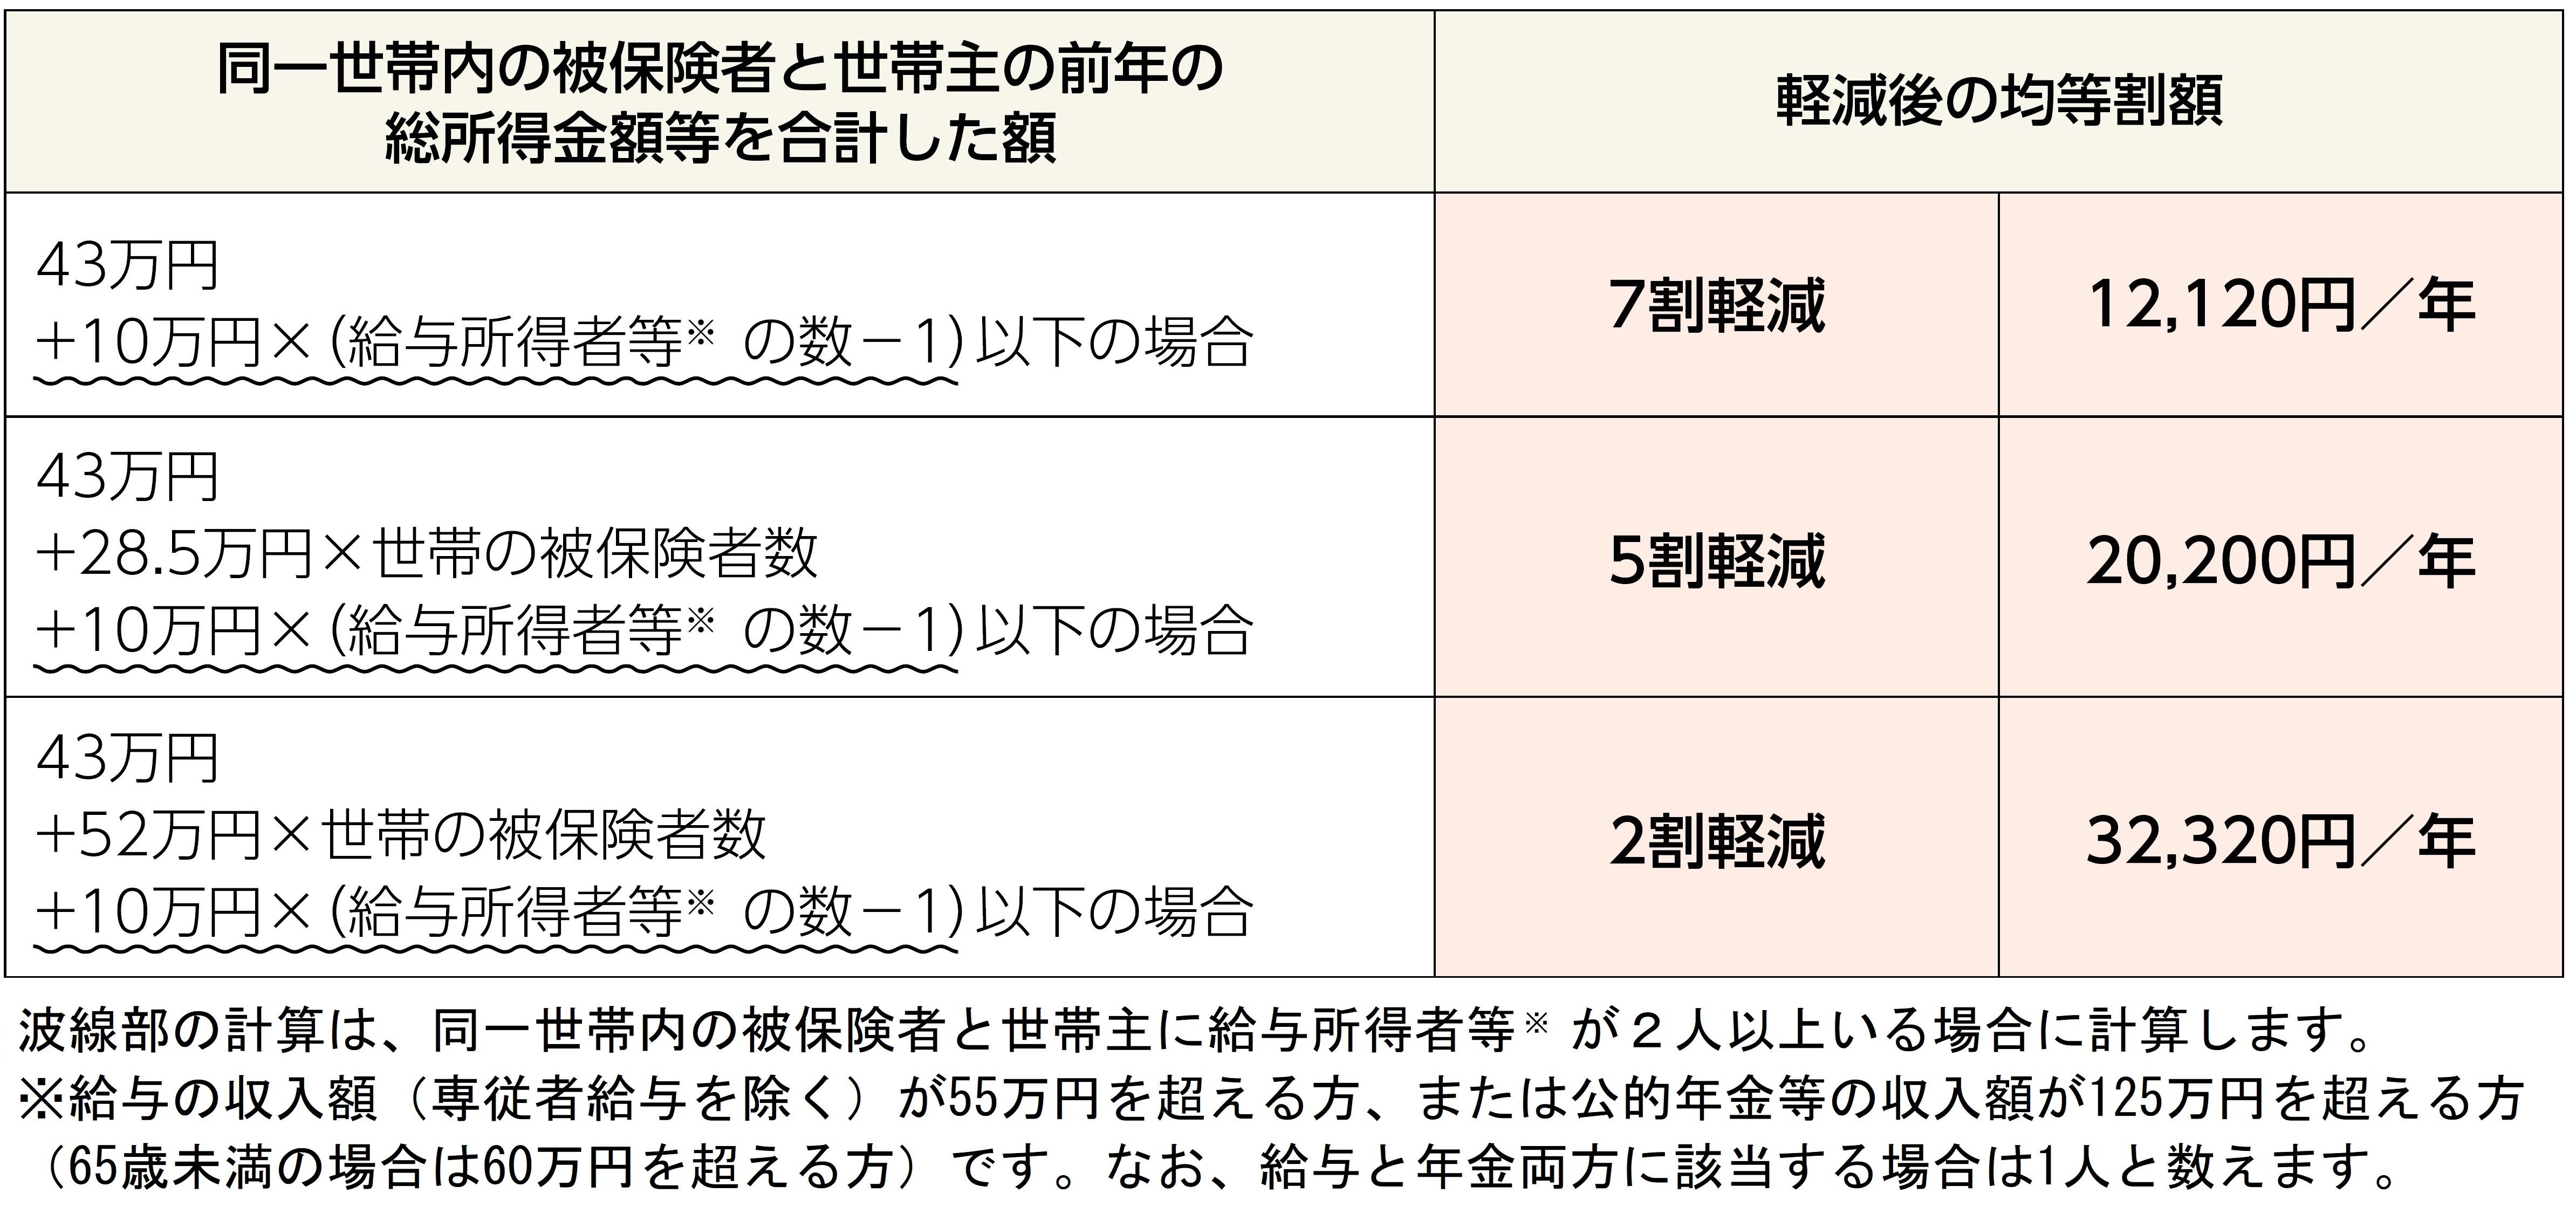 保険料の軽減制度について 保険料について 医療制度 新潟県後期高齢者医療広域連合